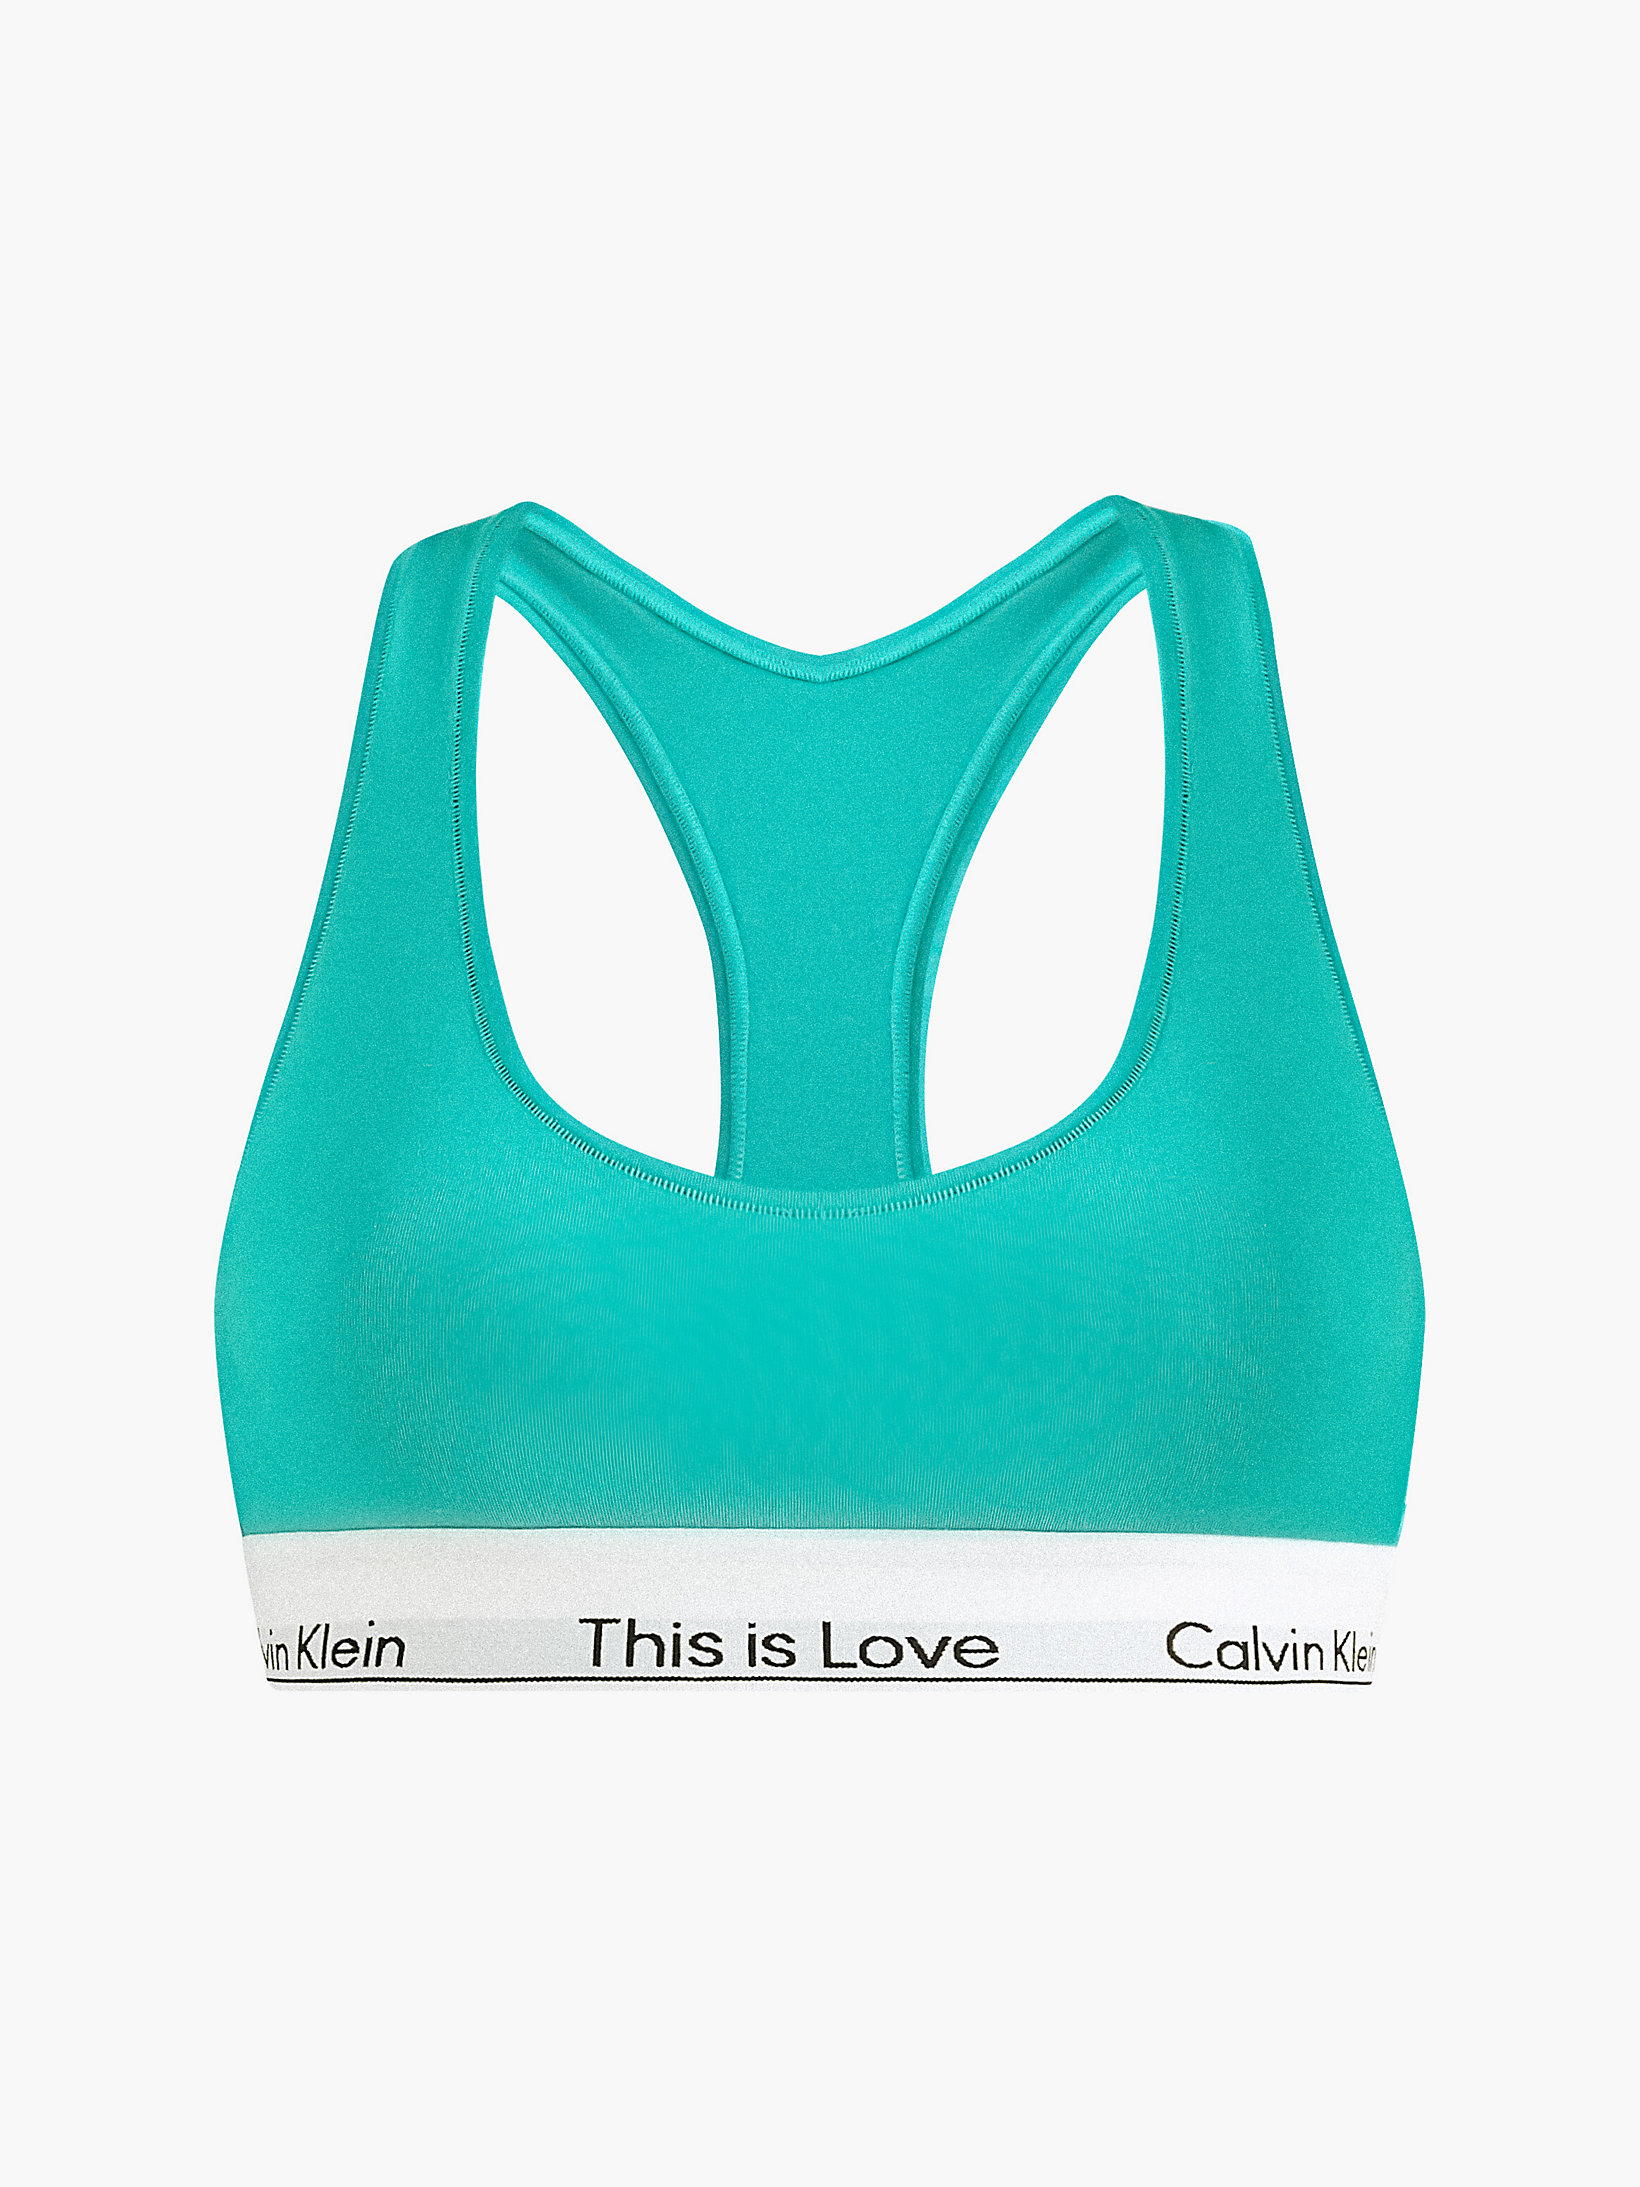 Island Turquoise Bralette - Pride undefined women Calvin Klein